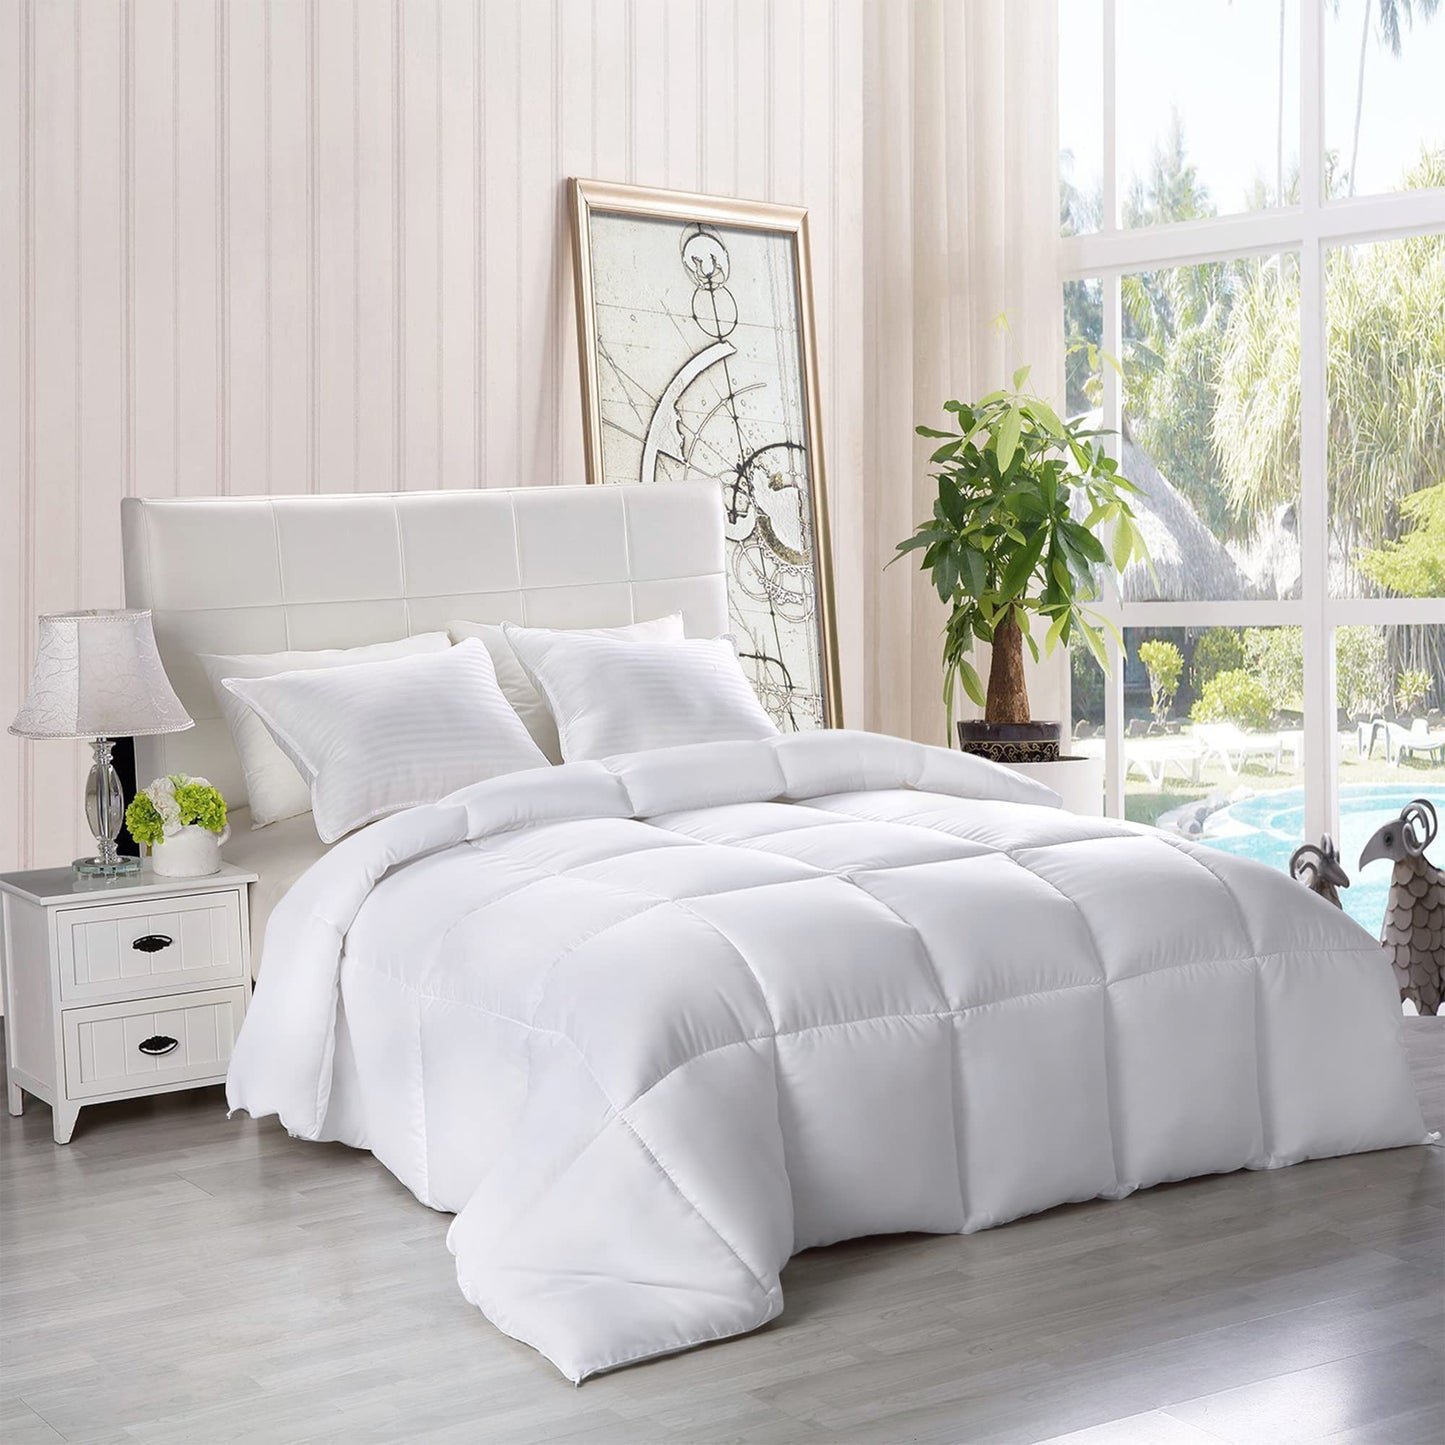 Utopia Bedding Comforter - All Season California King Comforter - White Cal King Comforter - Plush Siliconized Fiberfill - Box Stitched